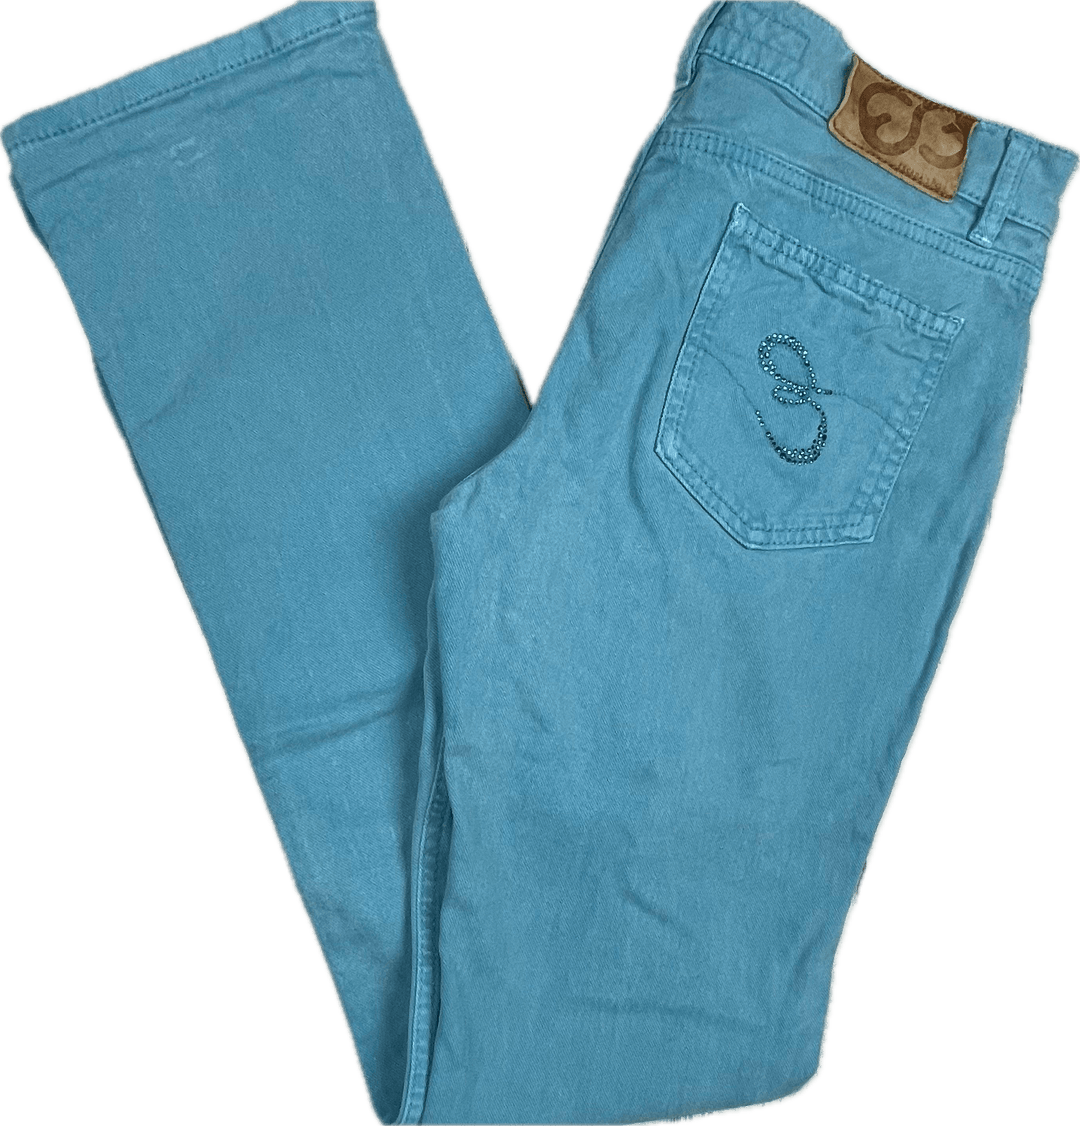 Escada Sport Ladies Blue Crystal Trim Jeans - Size 36 Euro or 7AU - Jean Pool